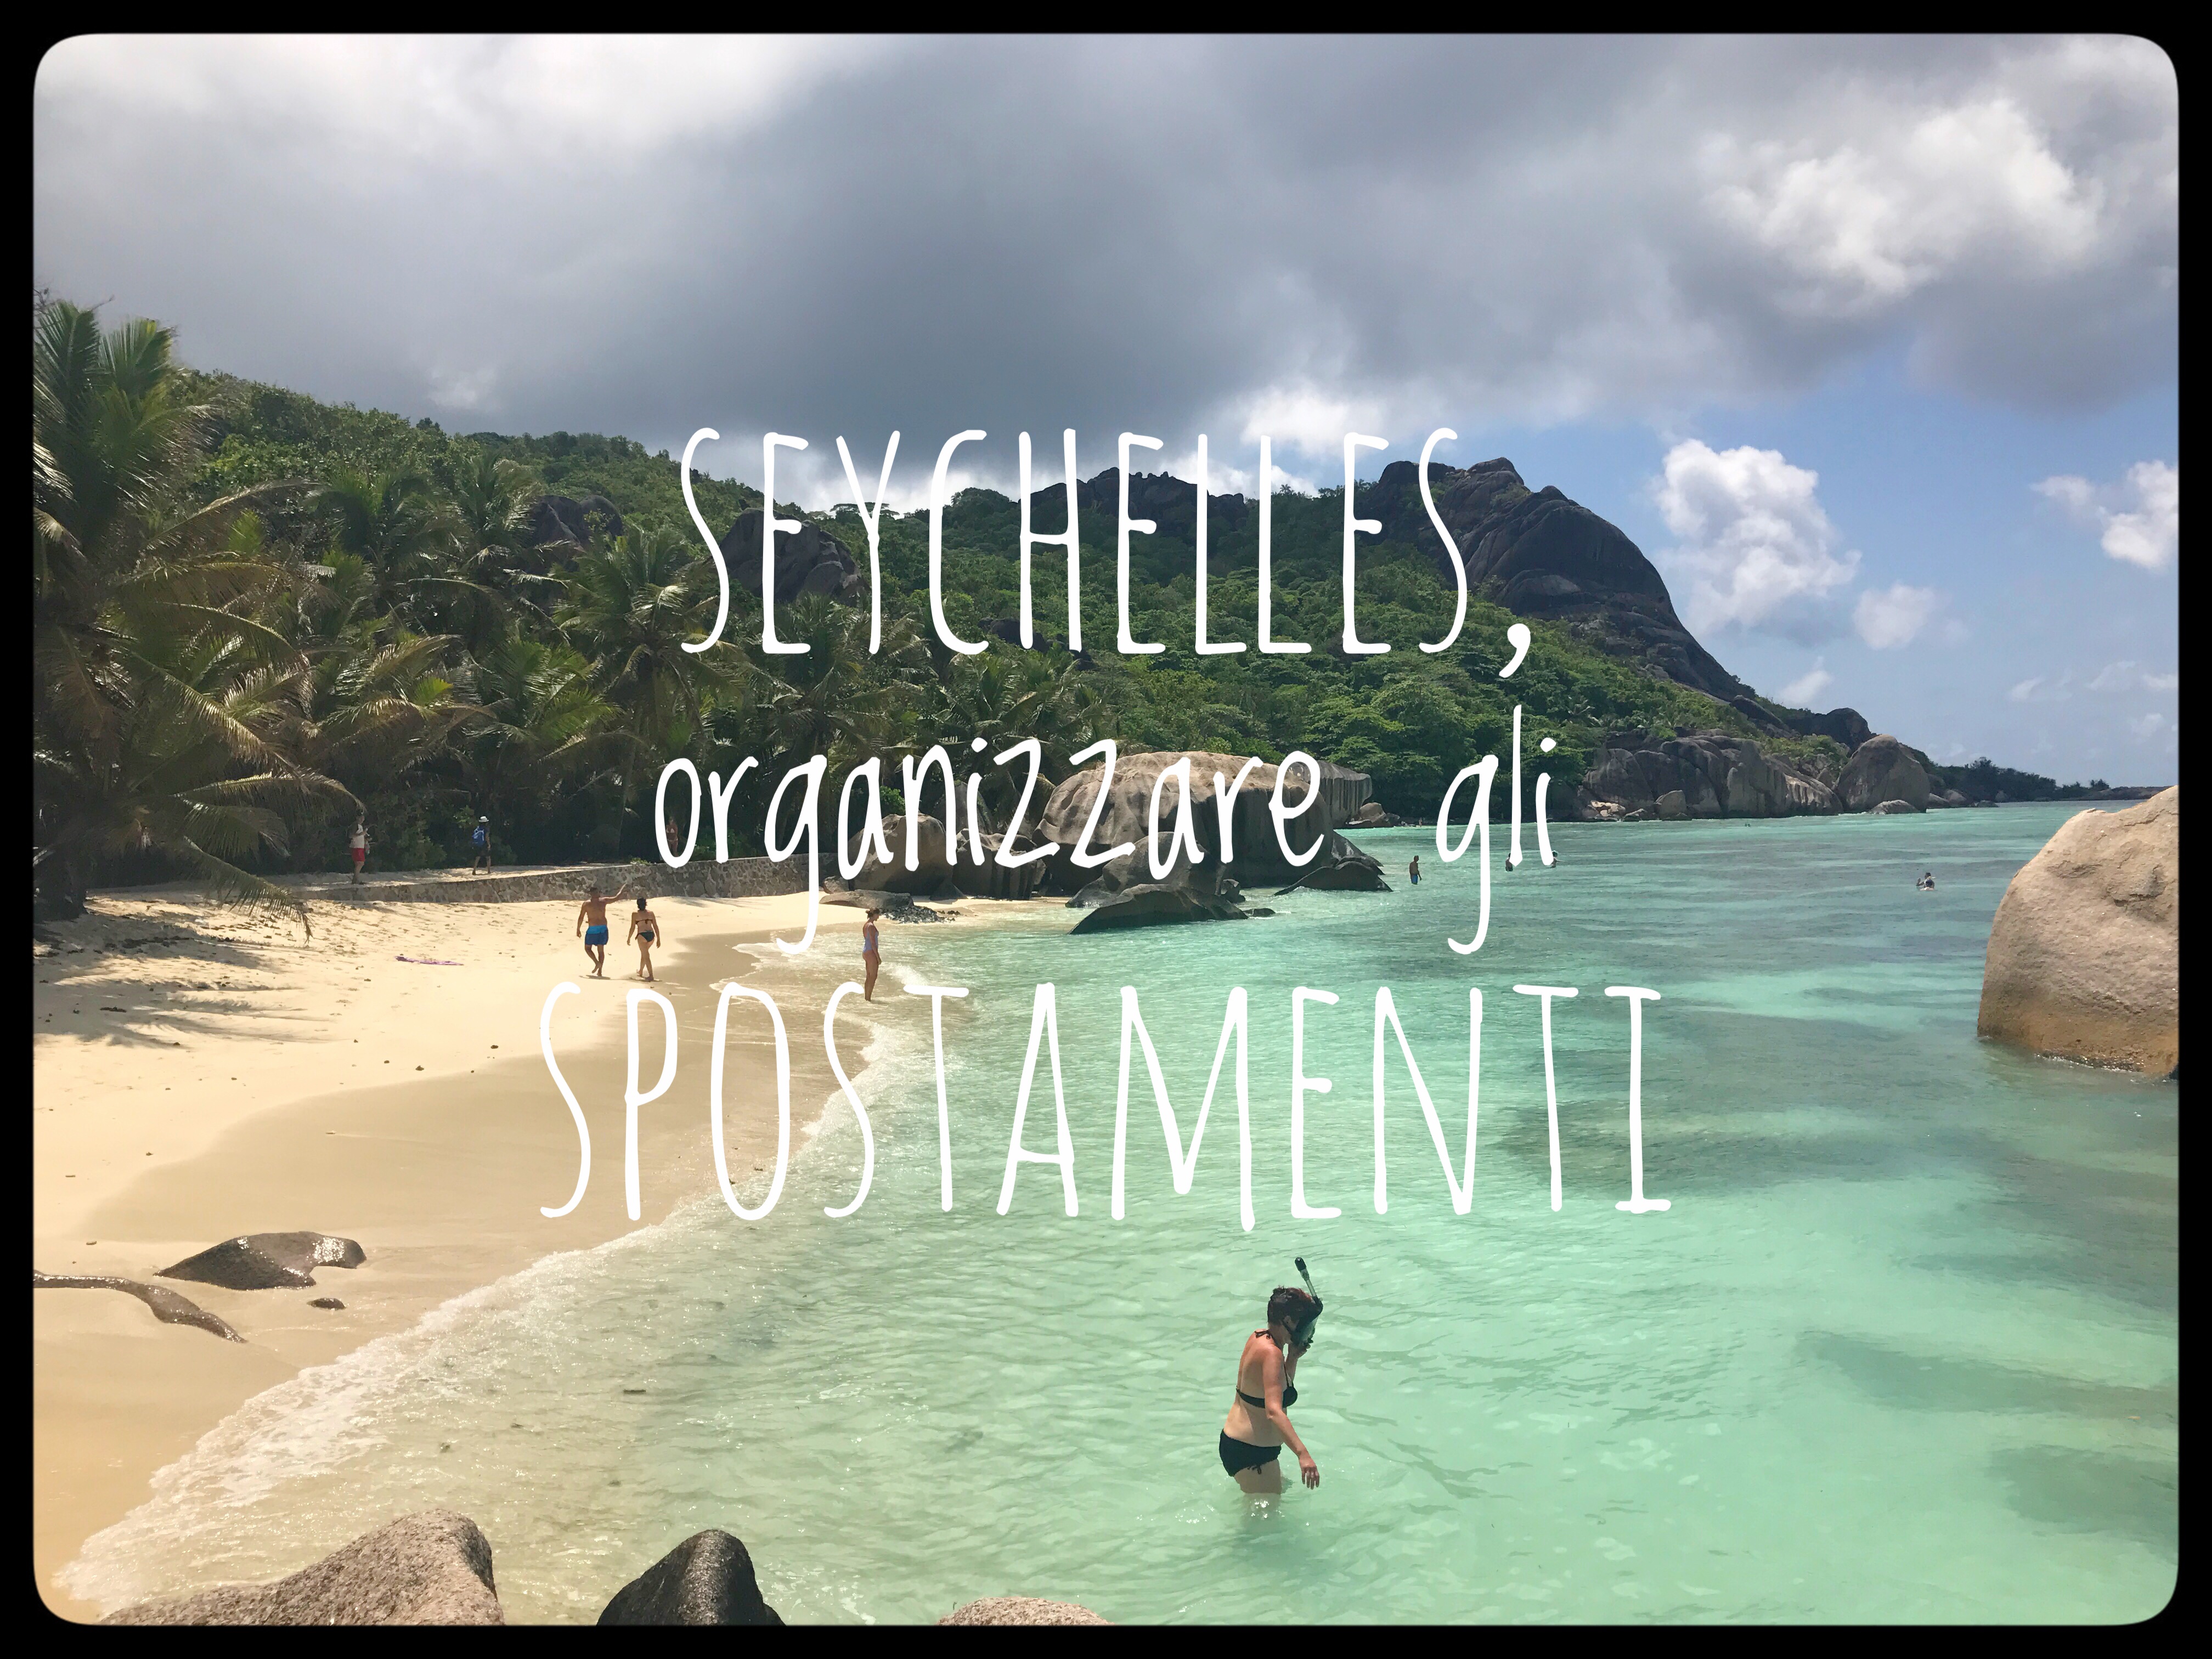 seychelles, organizzare gli spostamenti